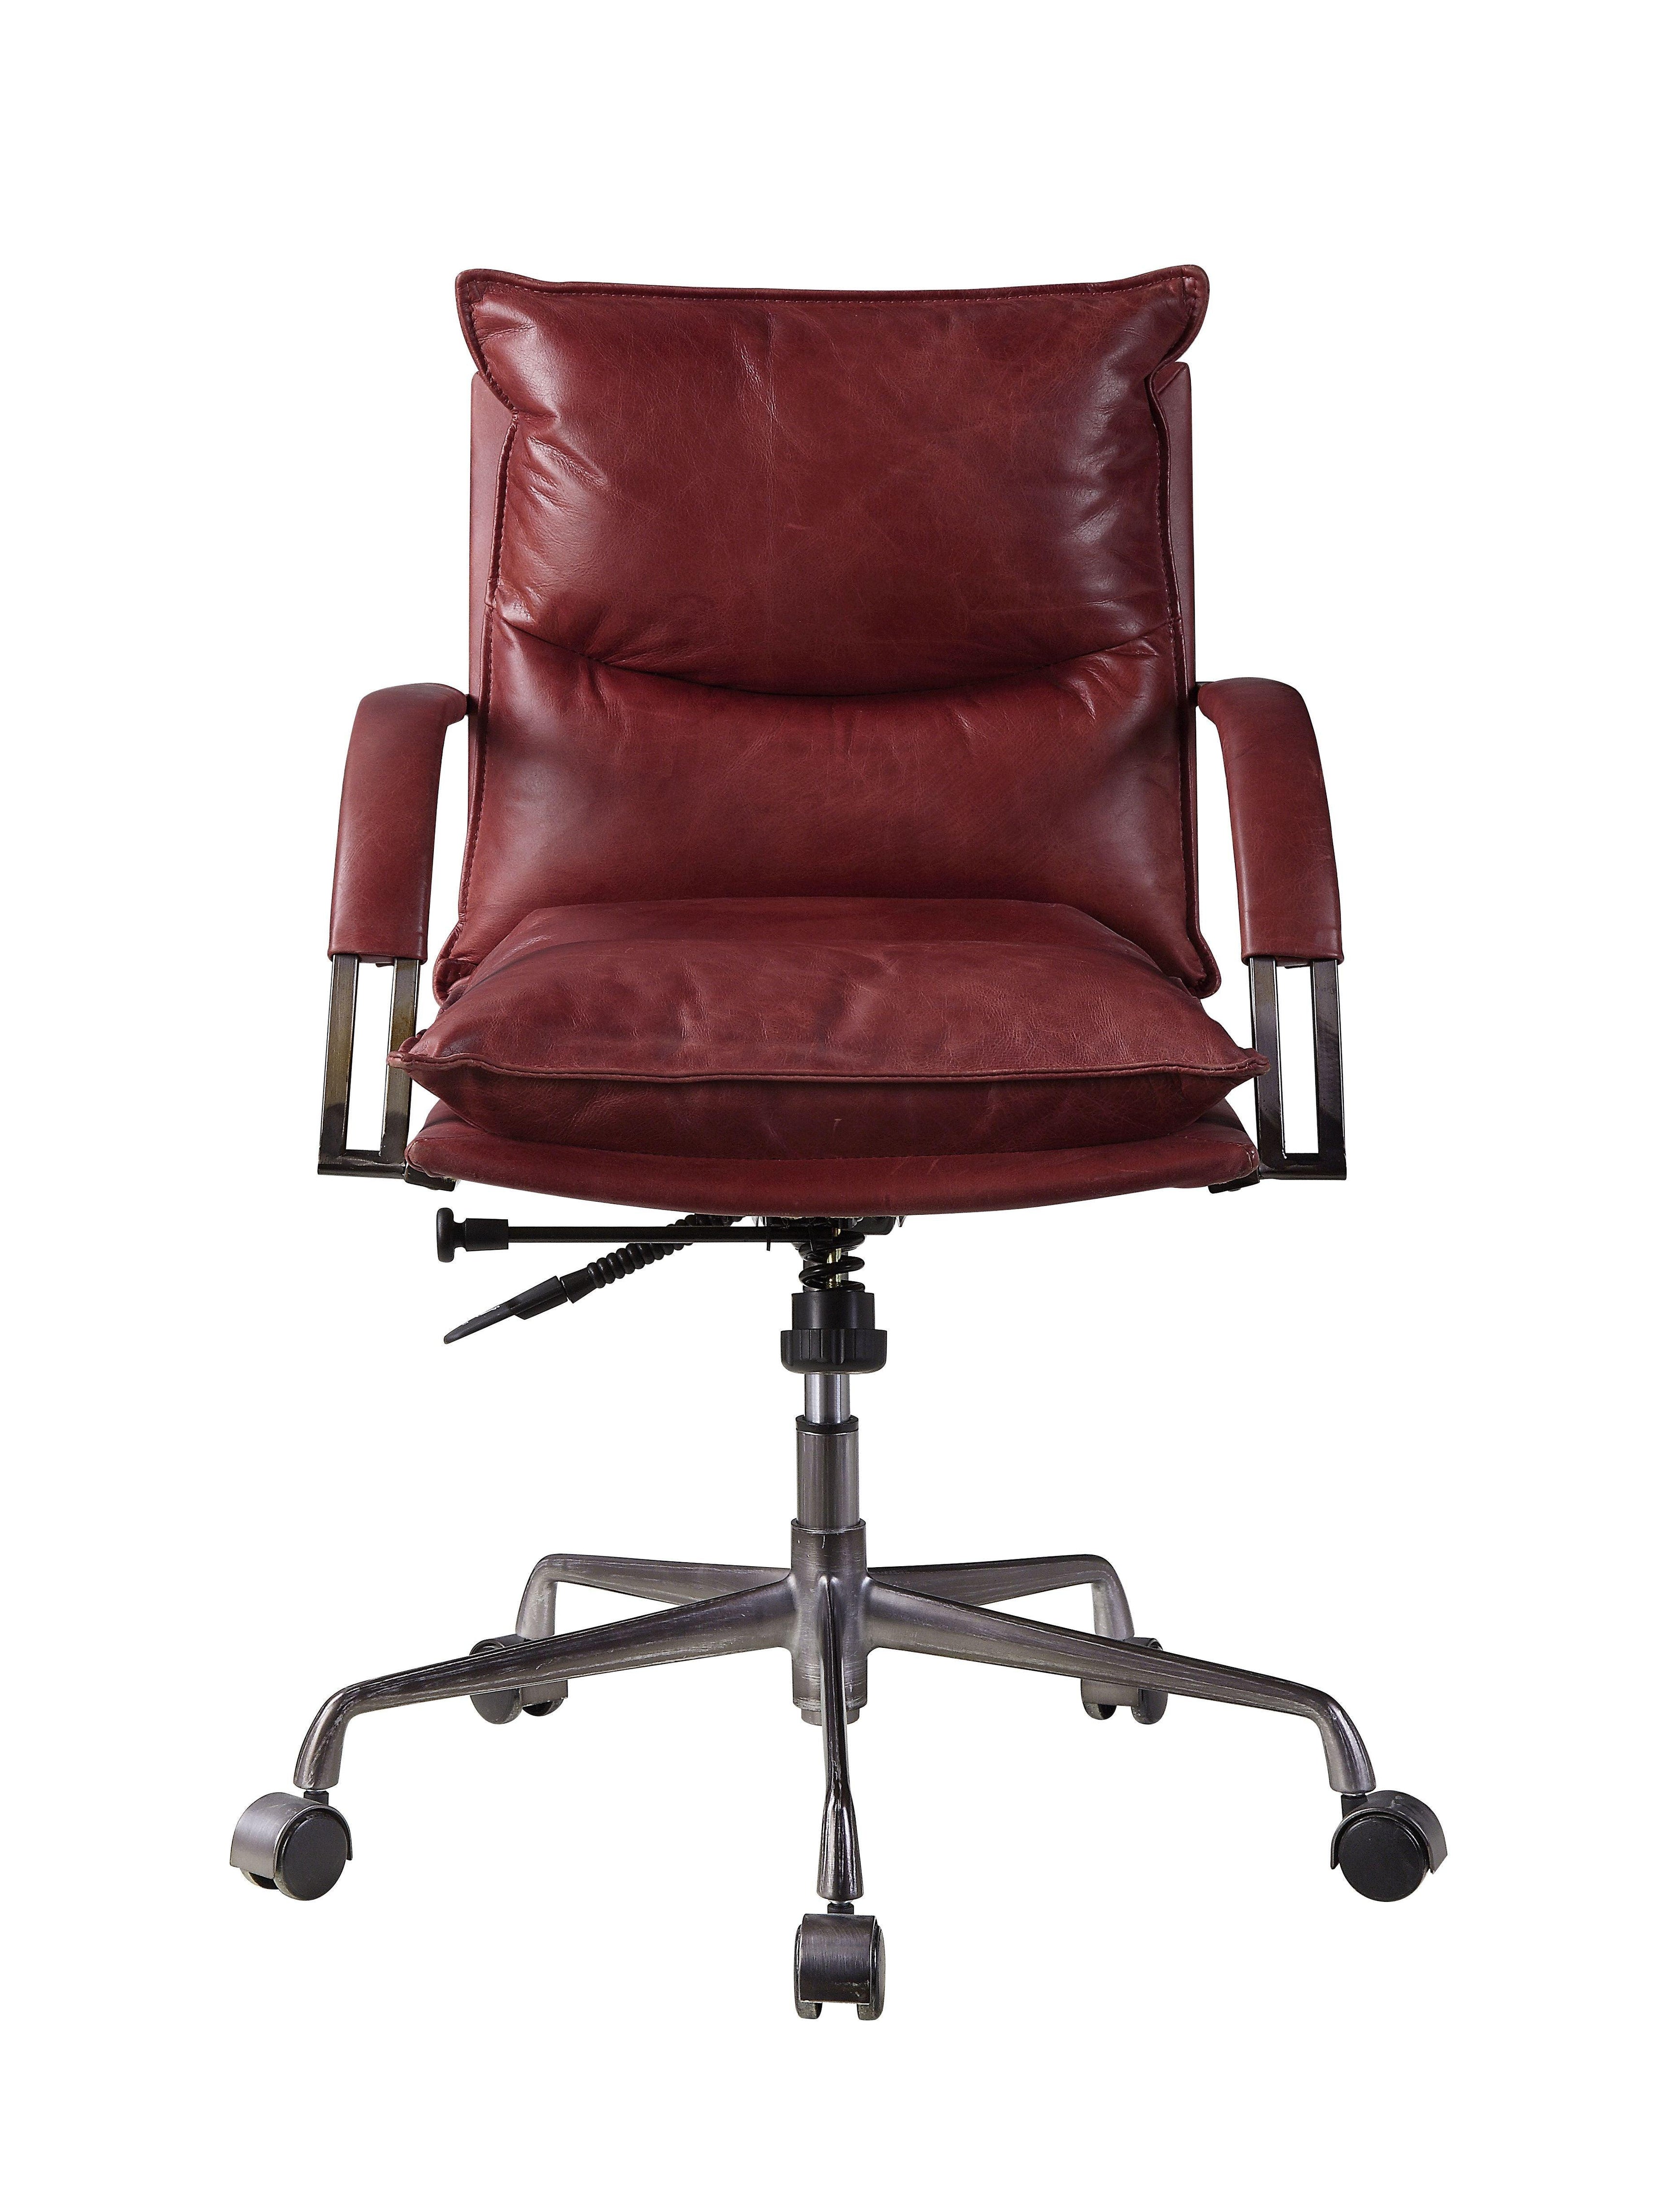 ACME - Haggar - Executive Office Chair - 5th Avenue Furniture